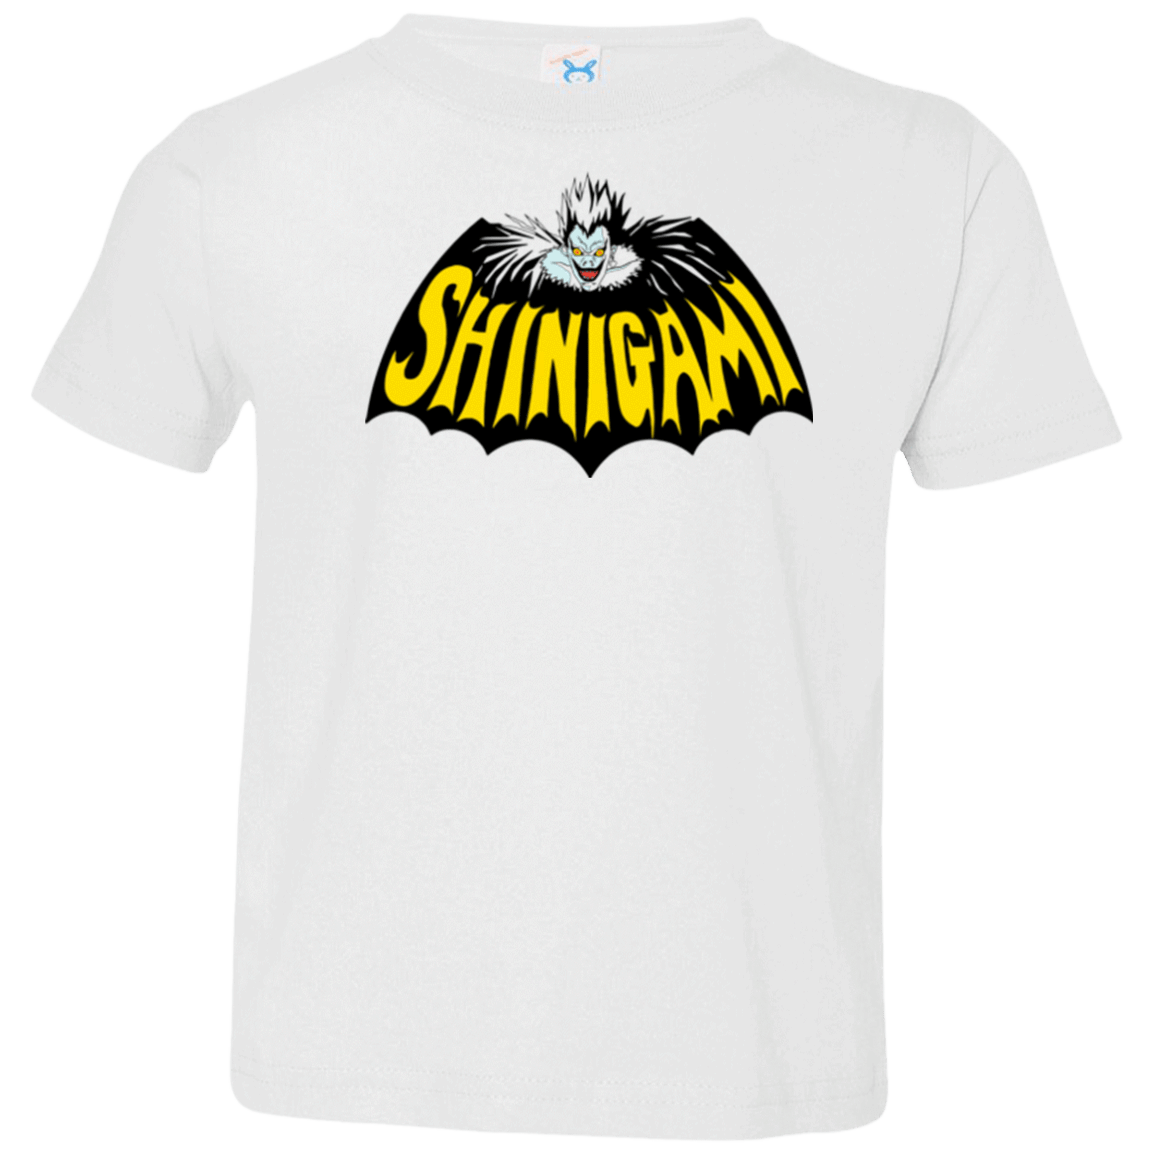 T-Shirts White / 2T Bat Shinigami Toddler Premium T-Shirt